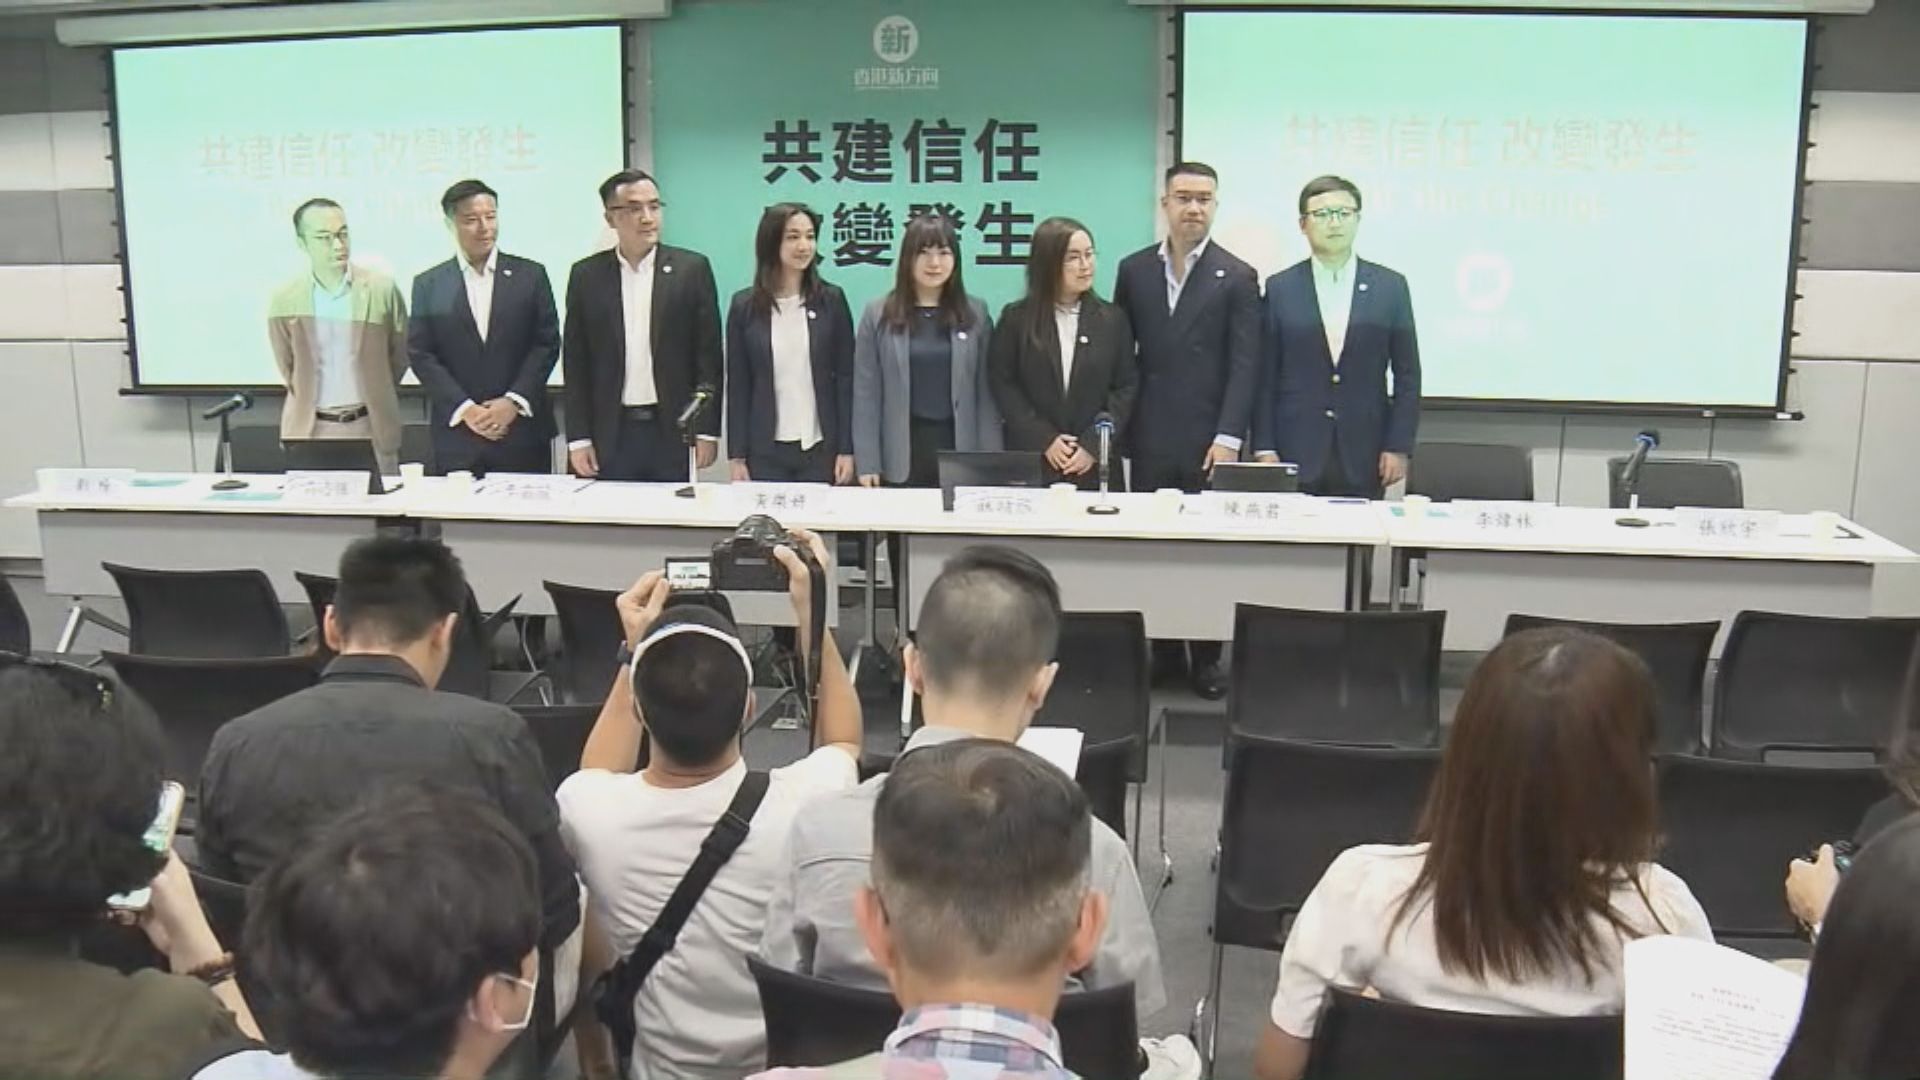 「香港新方向」派至少5人參與區議會選舉